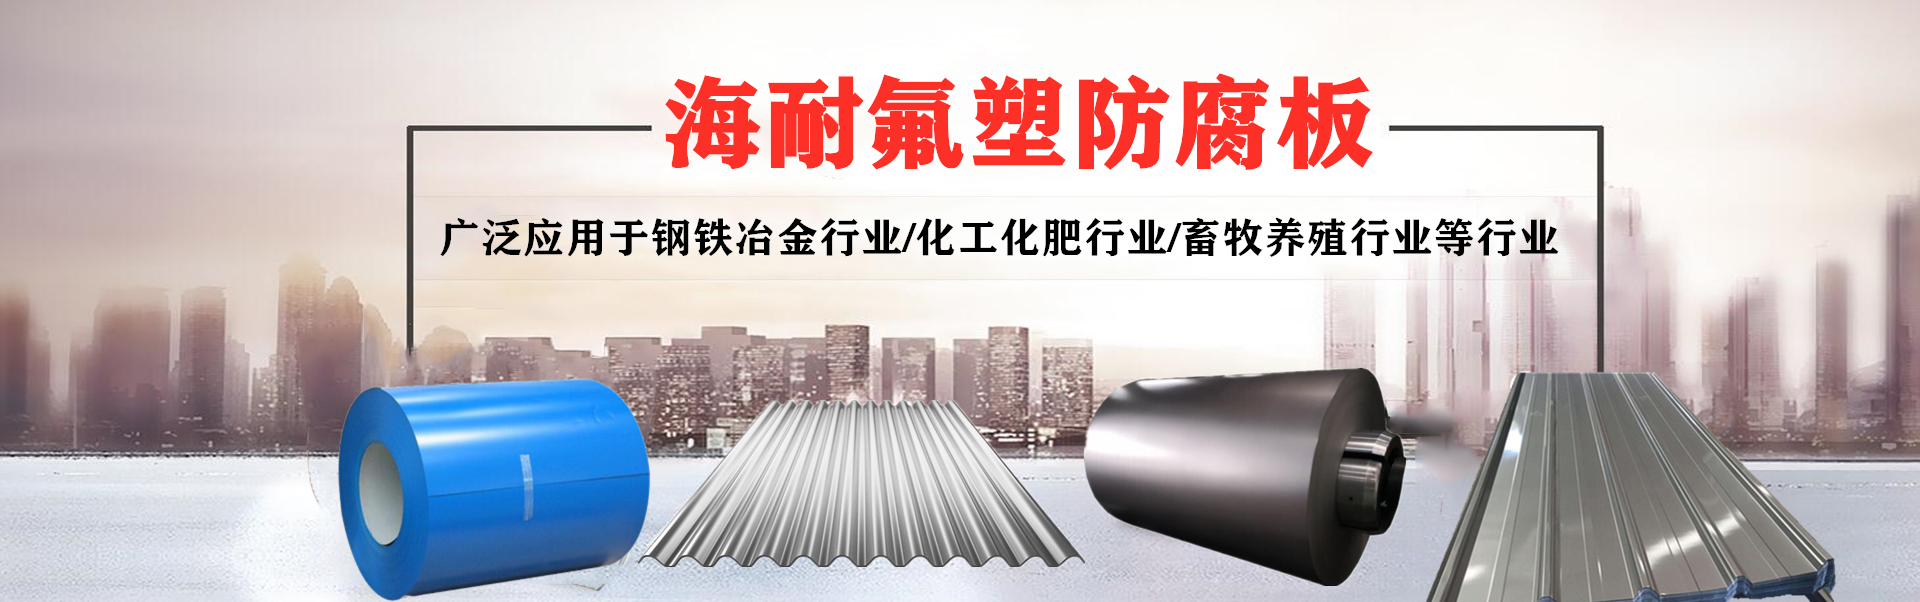 氟塑钢板-江苏海耐新材料有限公司